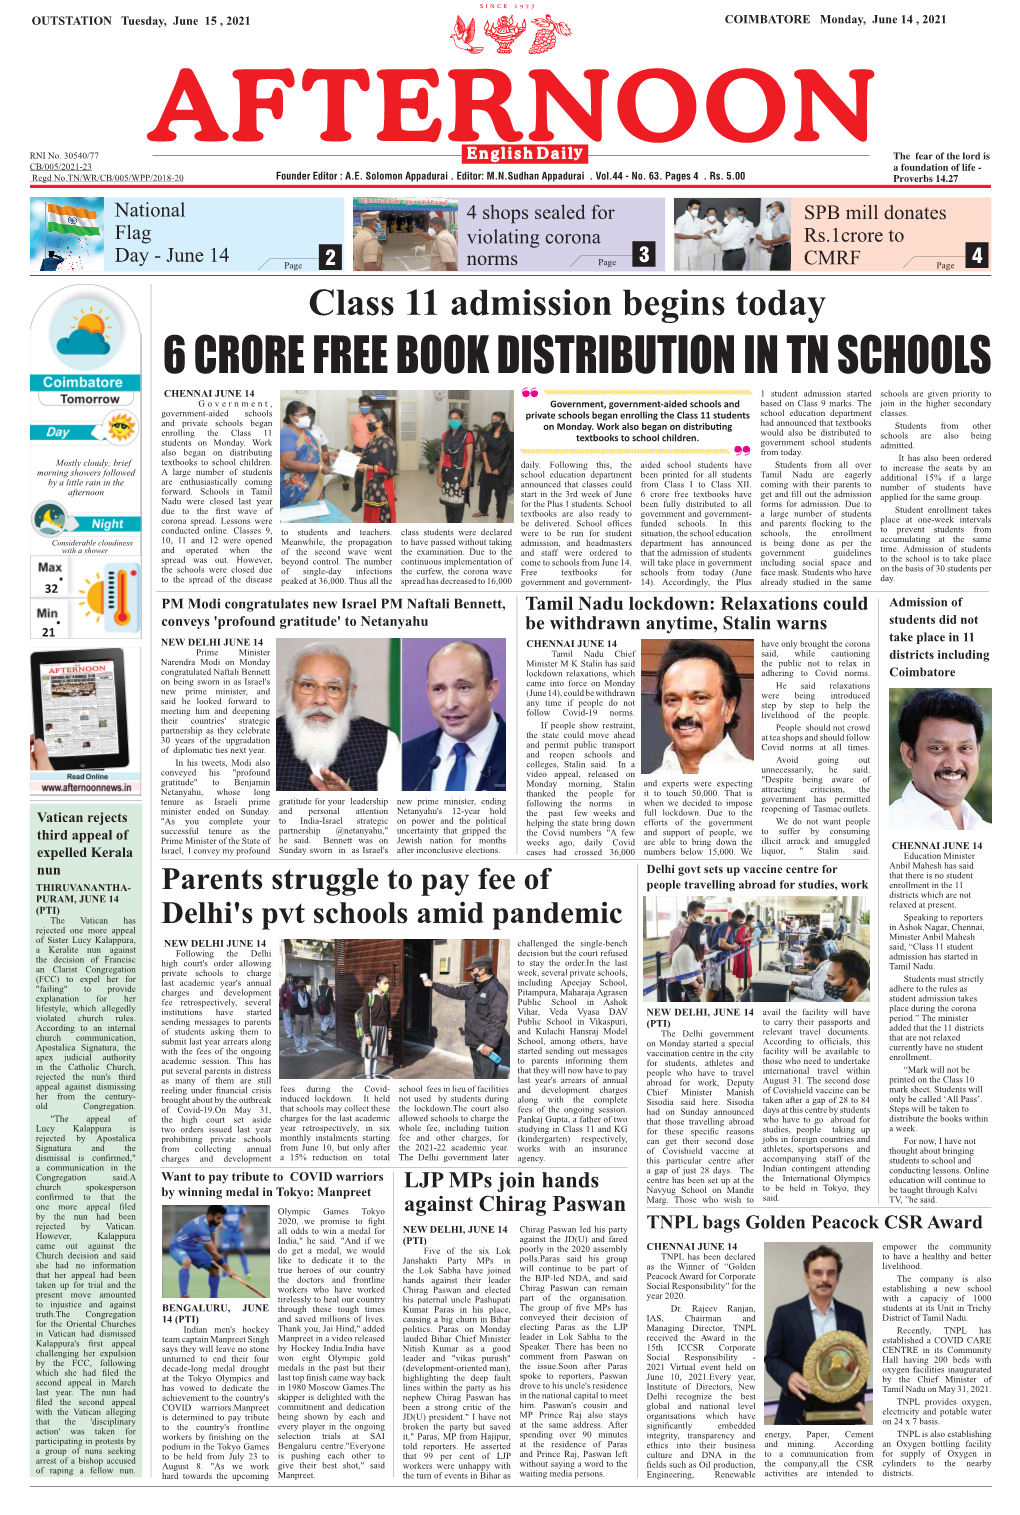 6 Crore Free Book Distribution in Tn Schools